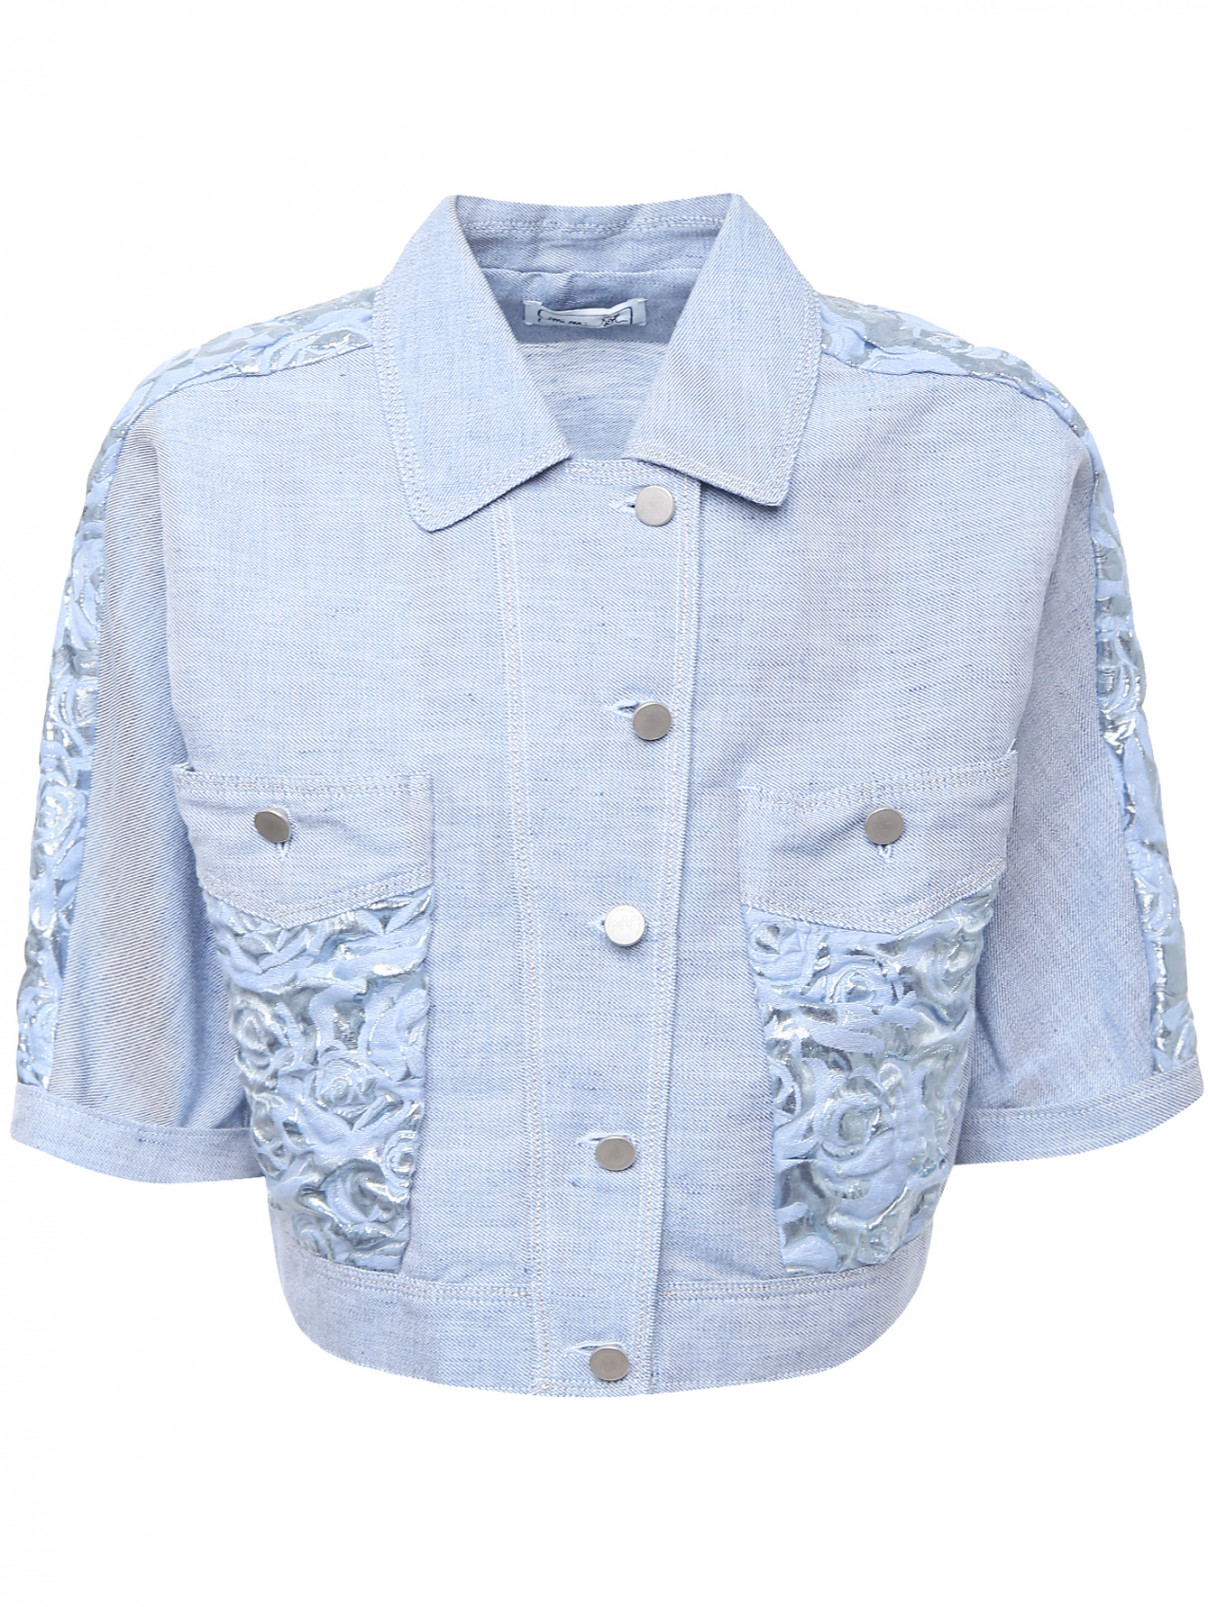 Куртка из денима с карманами Glamglow  –  Общий вид  – Цвет:  Синий